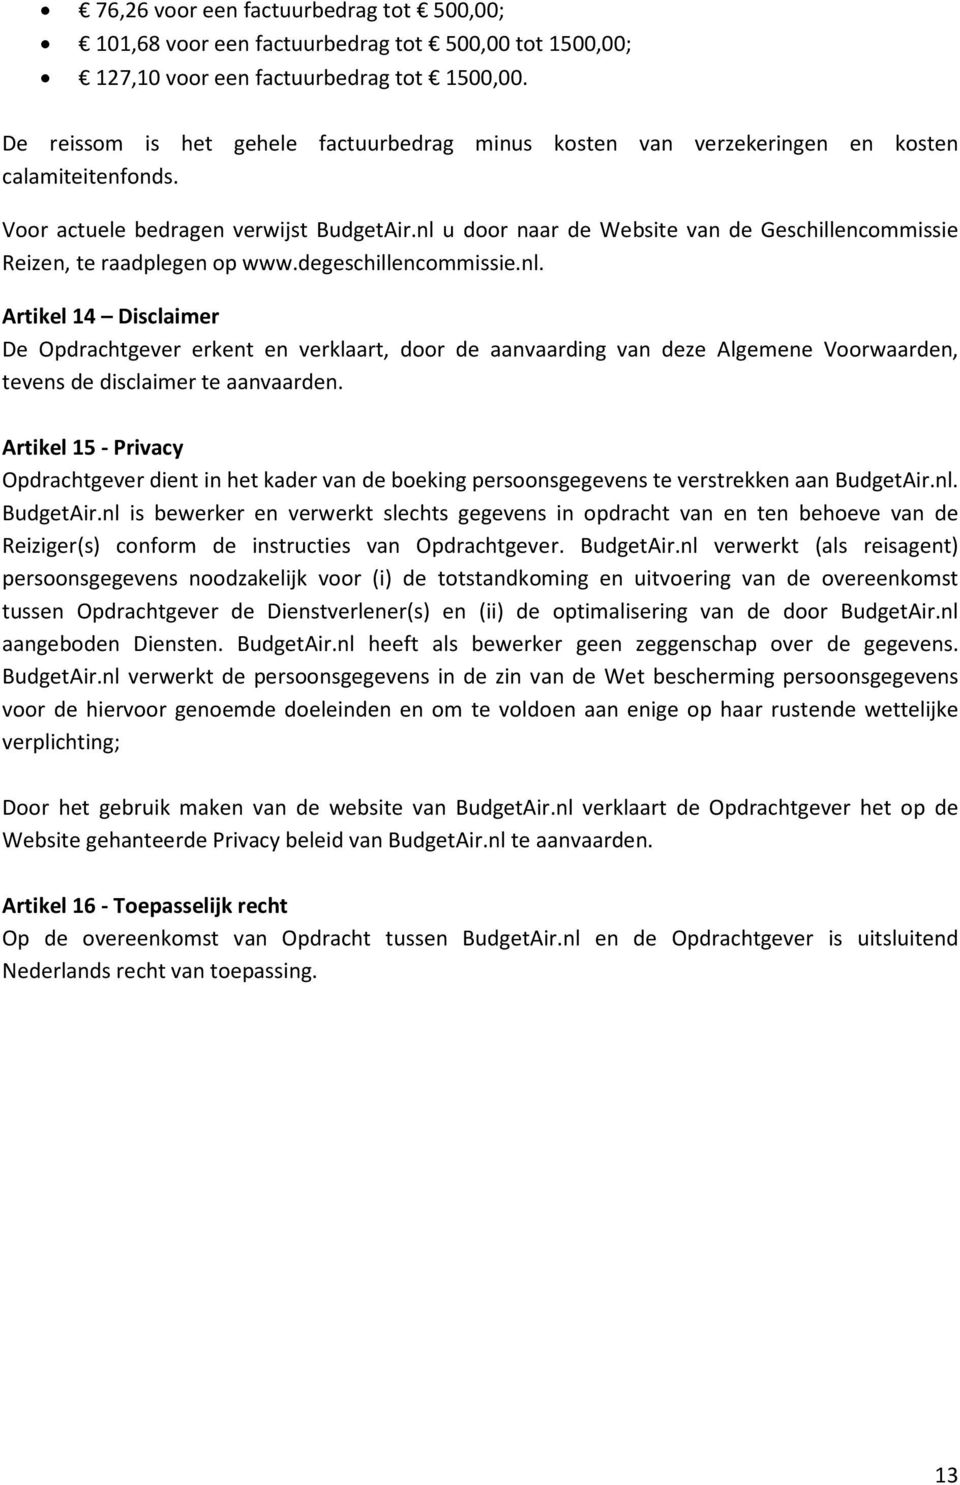 nl u door naar de Website van de Geschillencommissie Reizen, te raadplegen op www.degeschillencommissie.nl. Artikel 14 Disclaimer De Opdrachtgever erkent en verklaart, door de aanvaarding van deze Algemene Voorwaarden, tevens de disclaimer te aanvaarden.